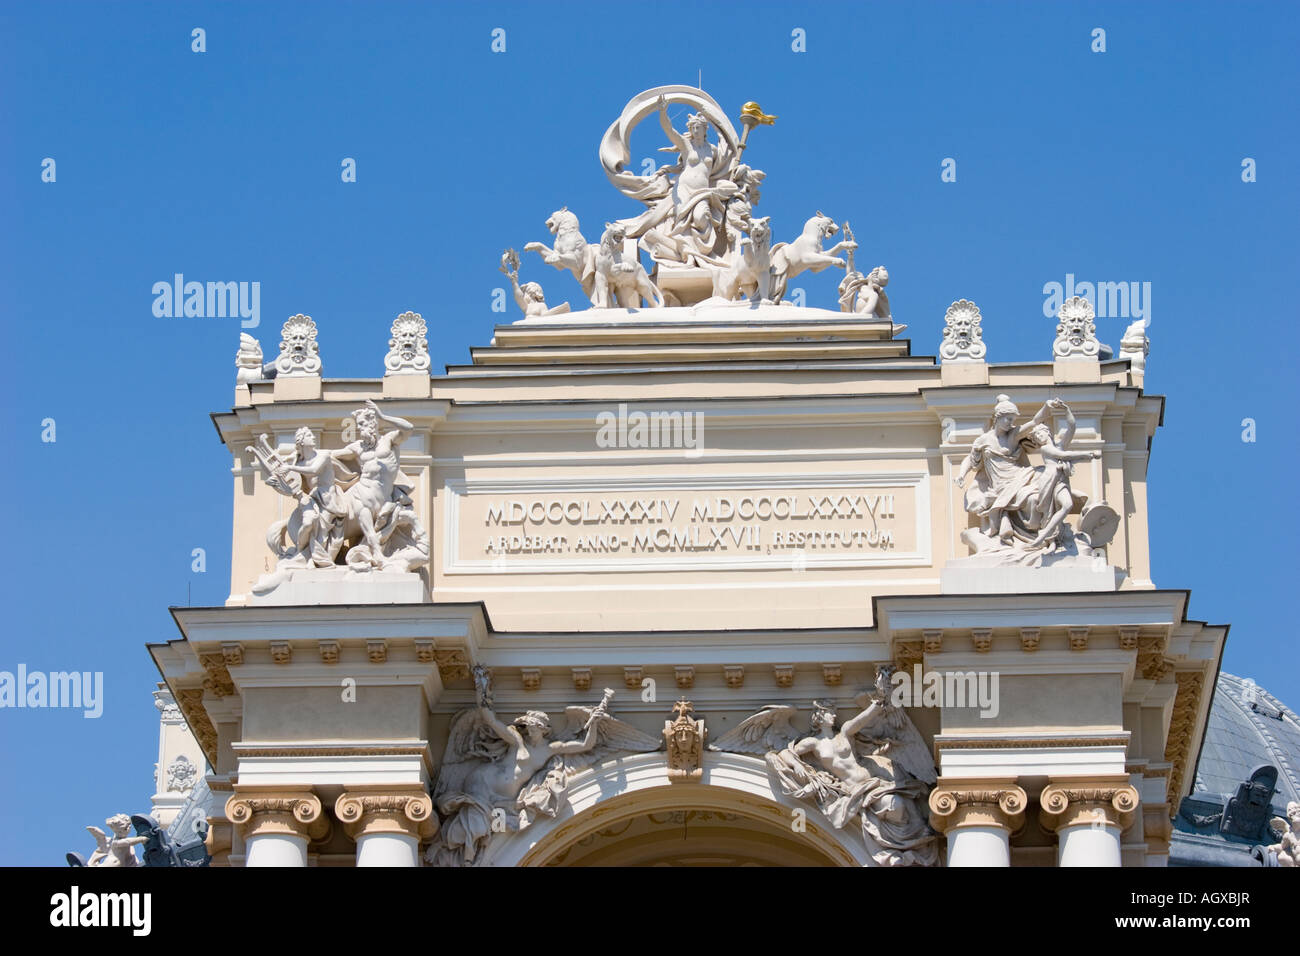 Le sculture sopra il portale della opera house di Odessa / Ucraina Foto Stock